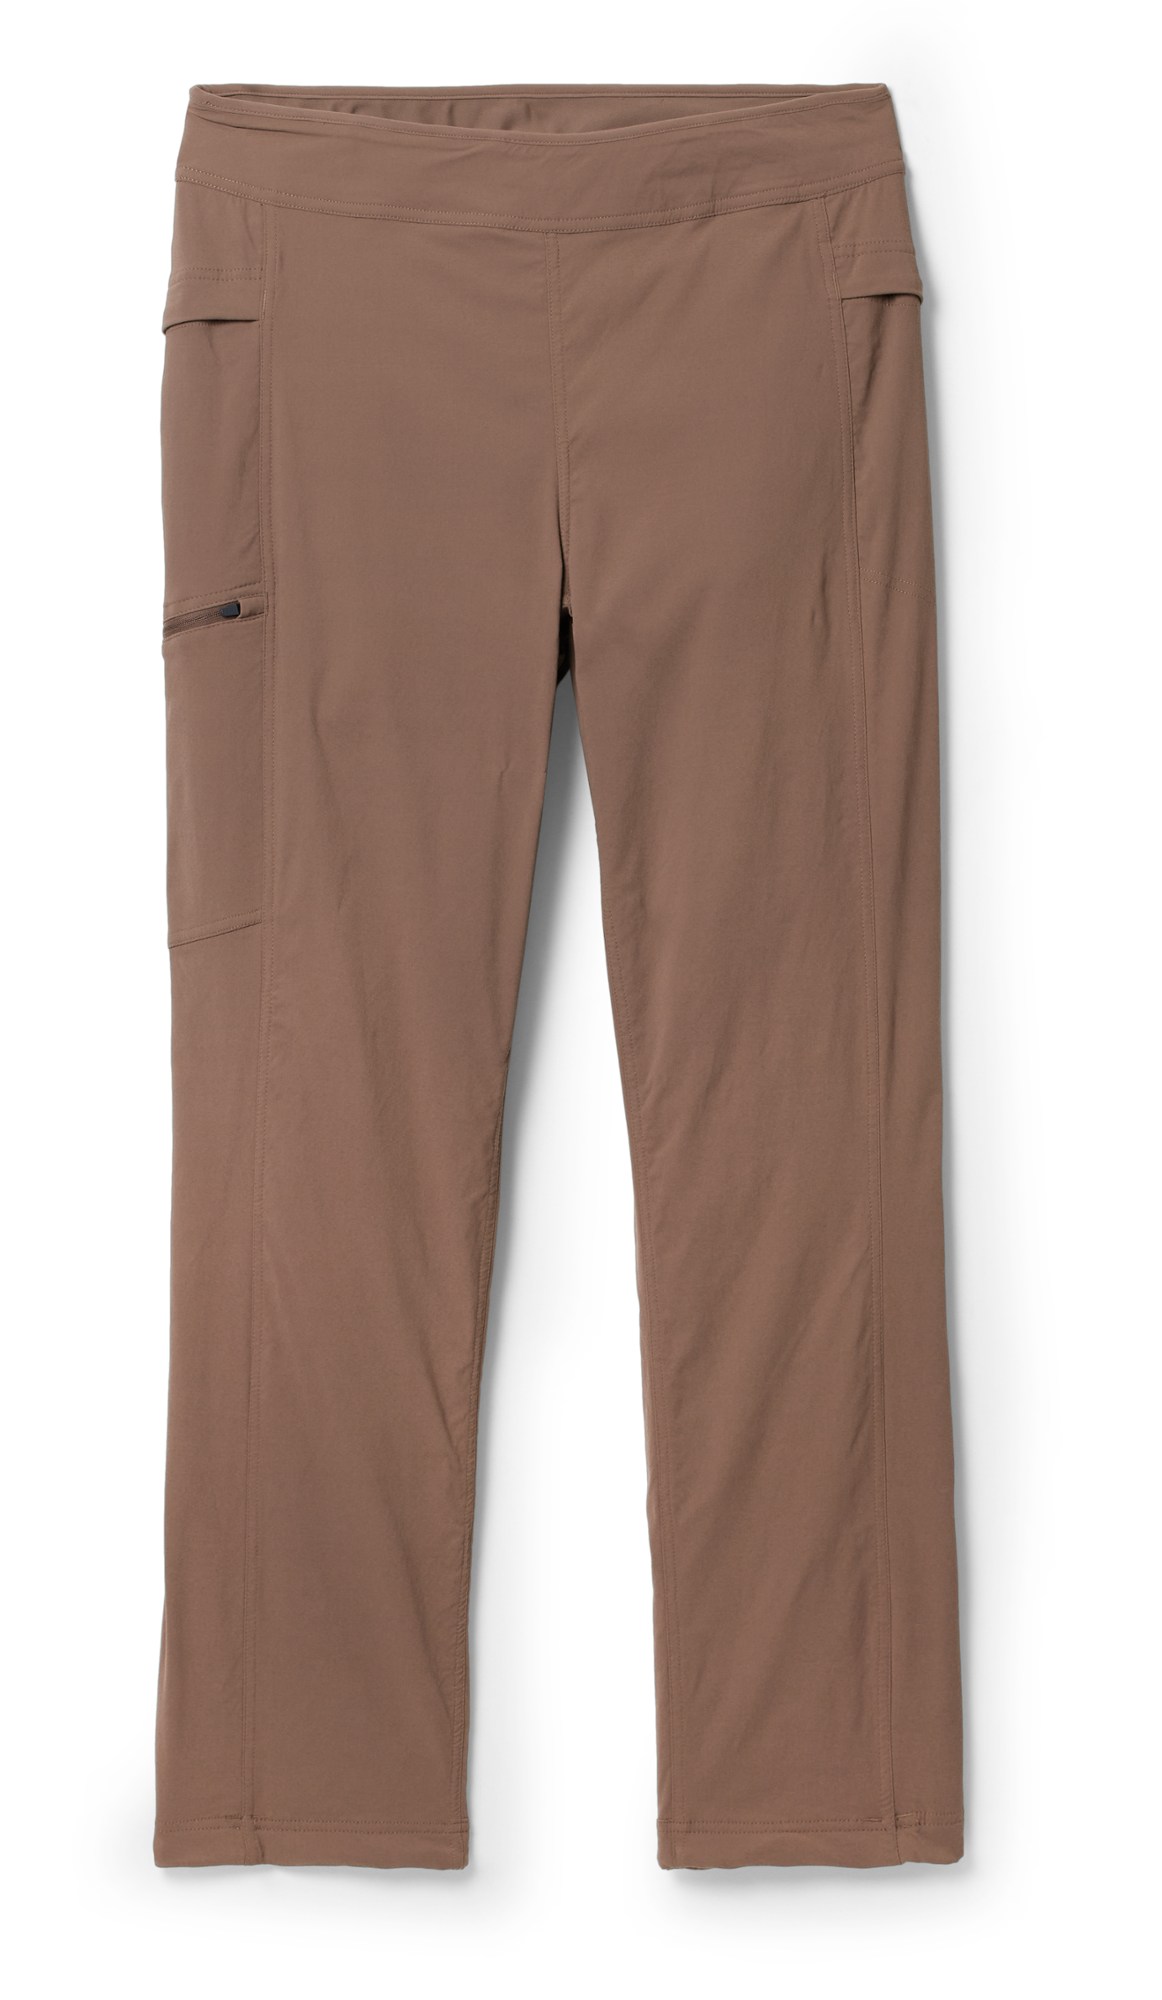 Брюки с высокой посадкой на подкладке Dynama — женские Mountain Hardwear, коричневый